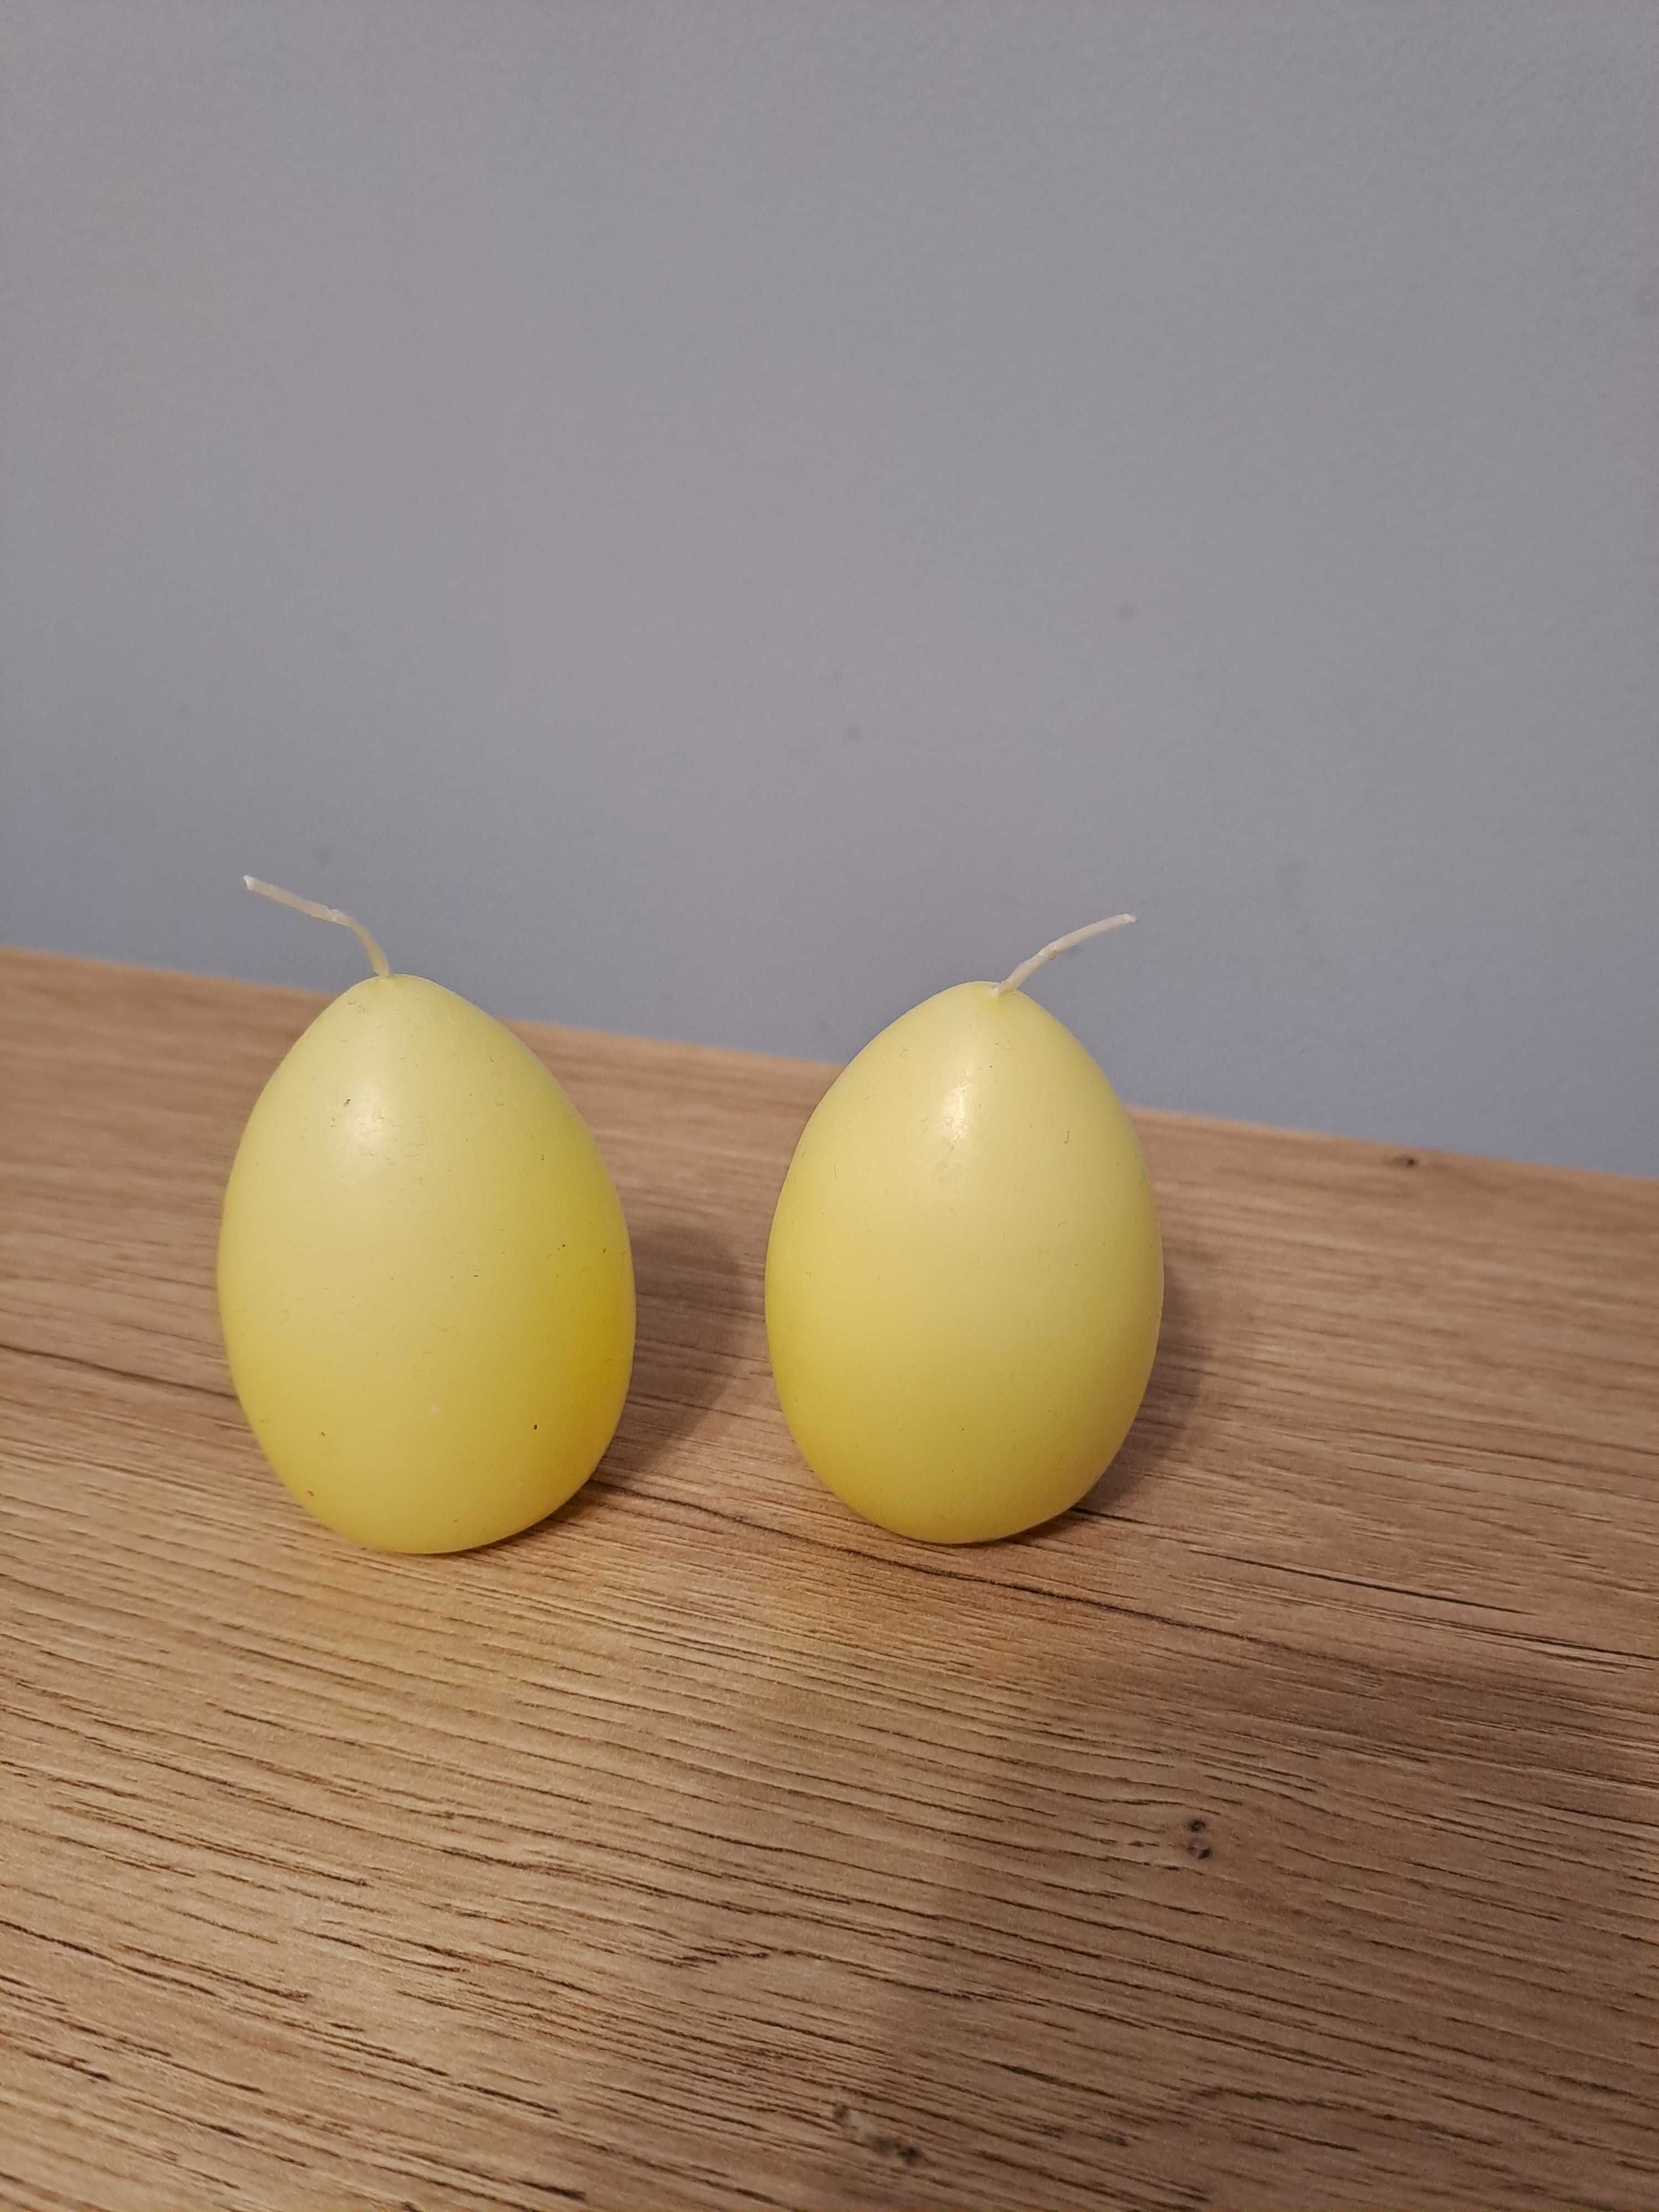 Jajko, Wielkanoc, świeczka, 6,5cm, 2 sztuki za 6 zł